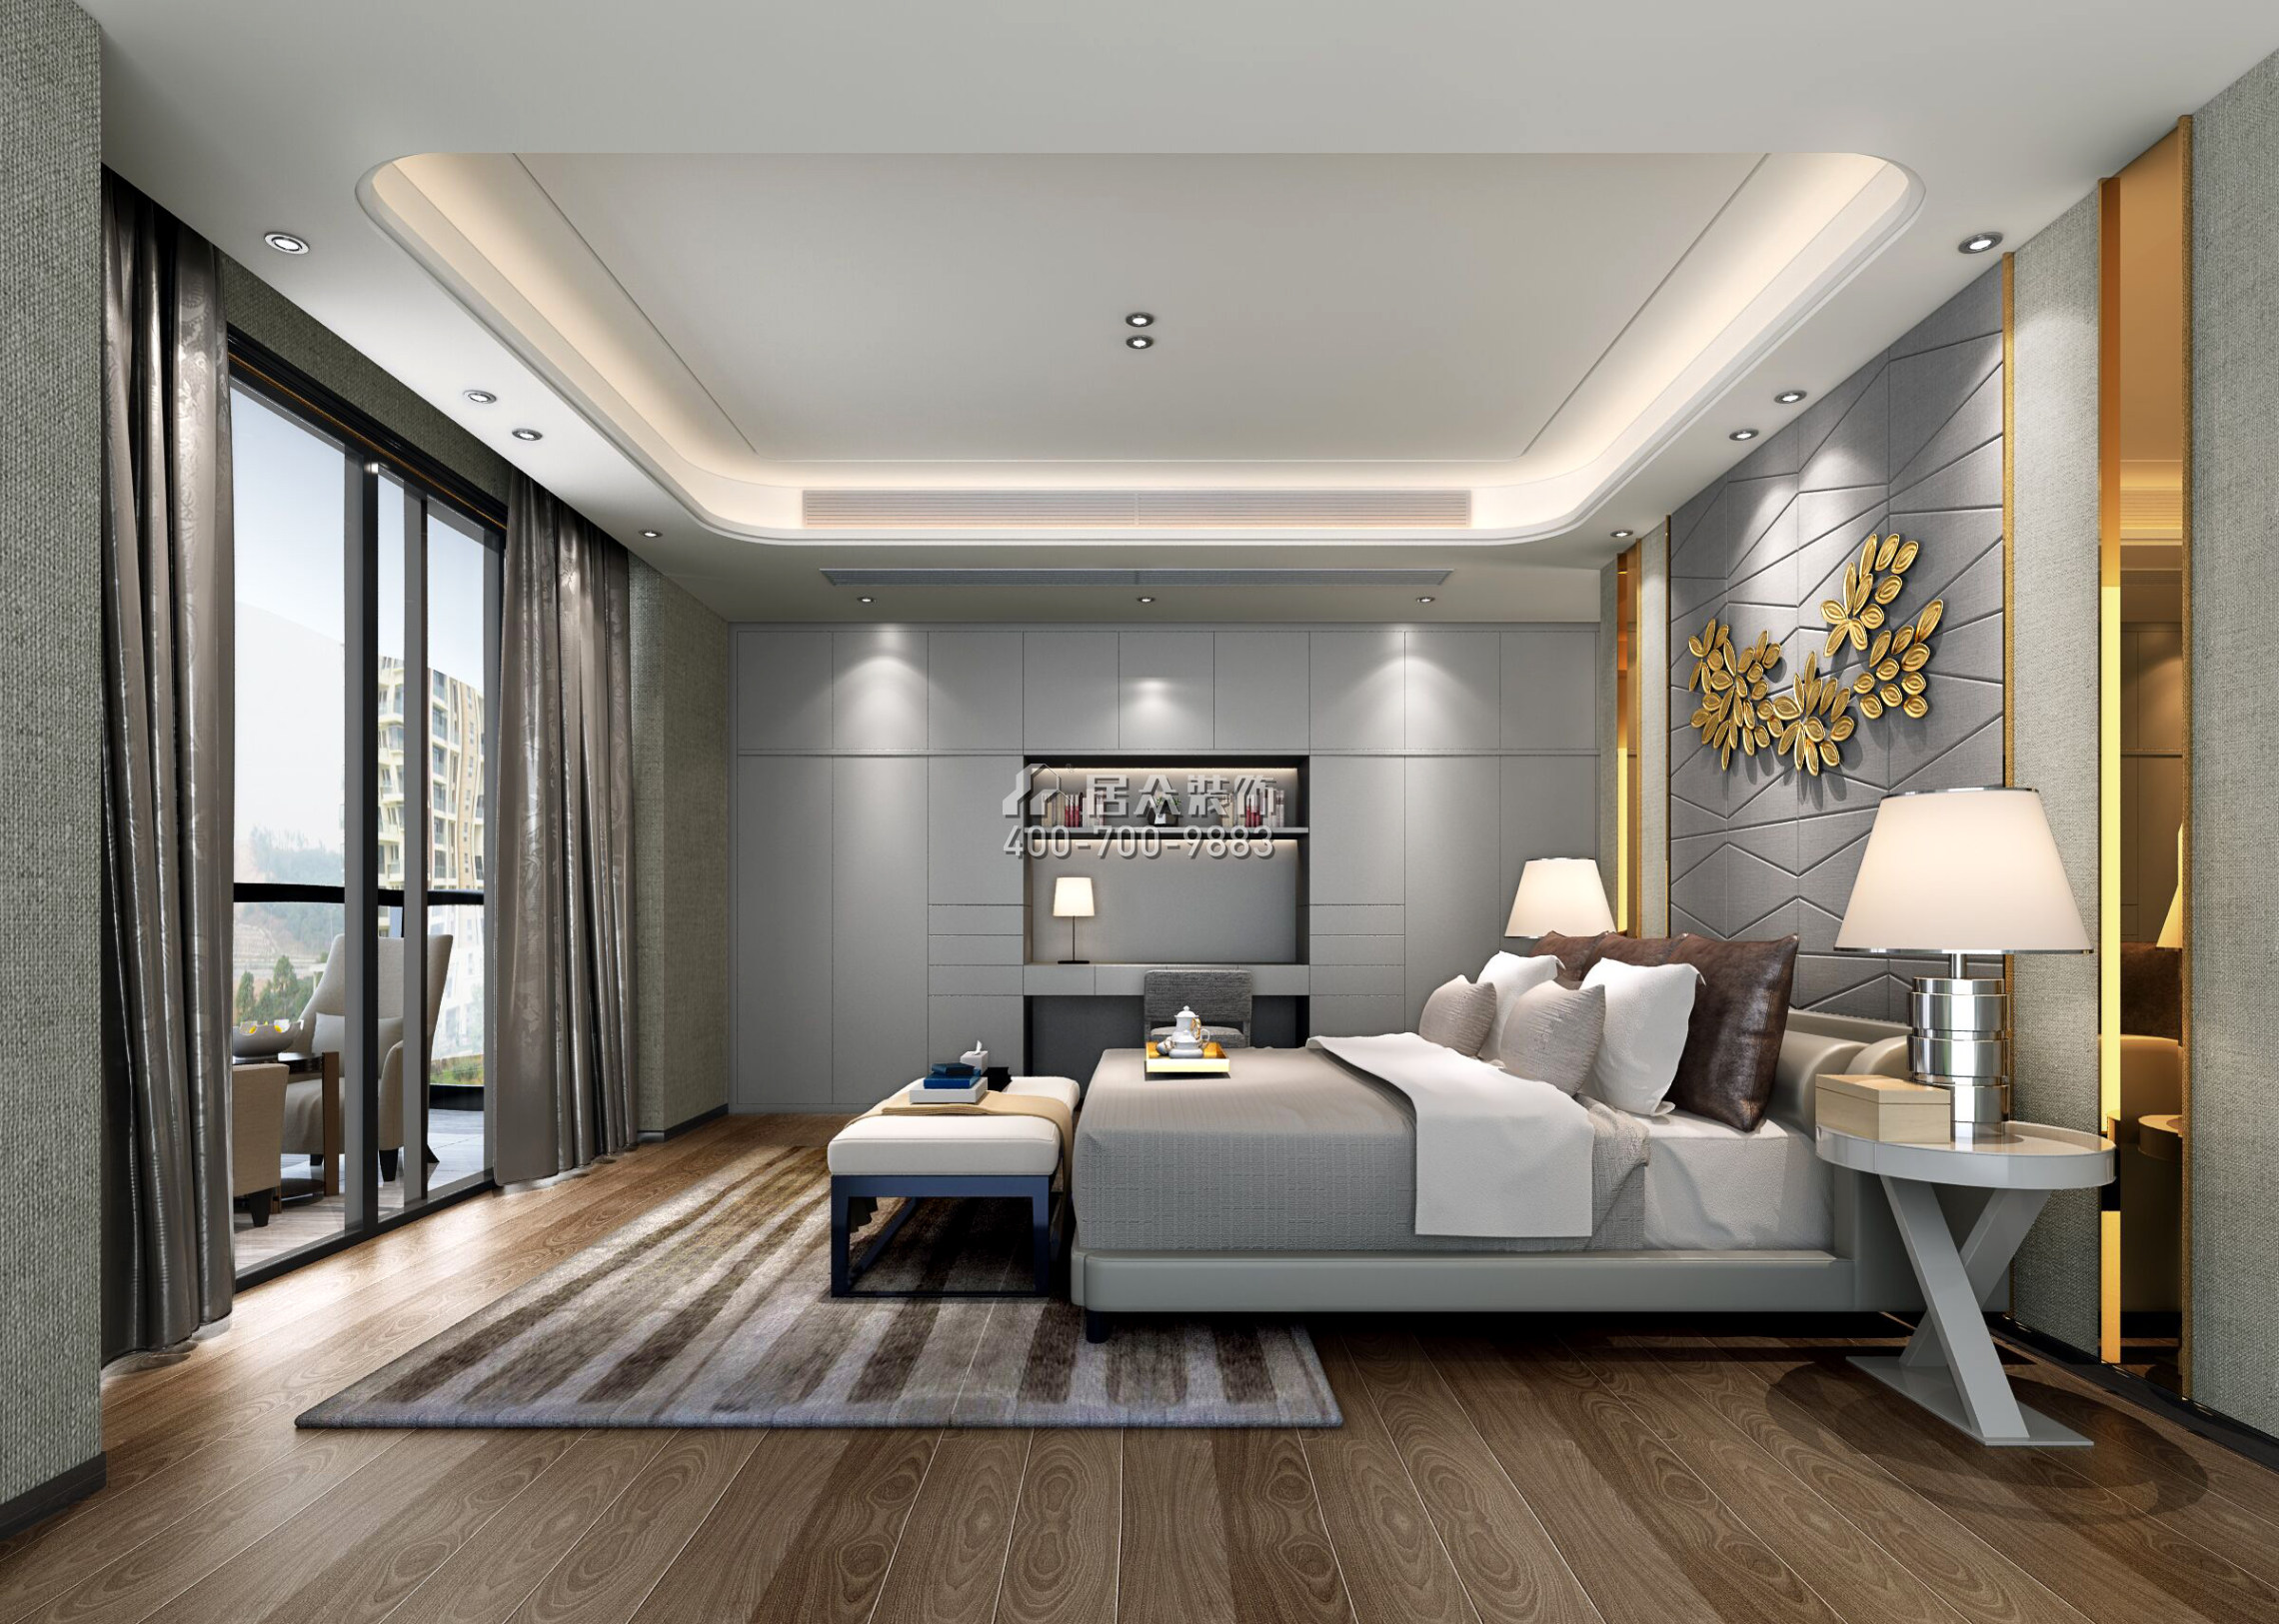 中信紅樹灣一期260平方米現代簡約風格平層戶型臥室裝修效果圖